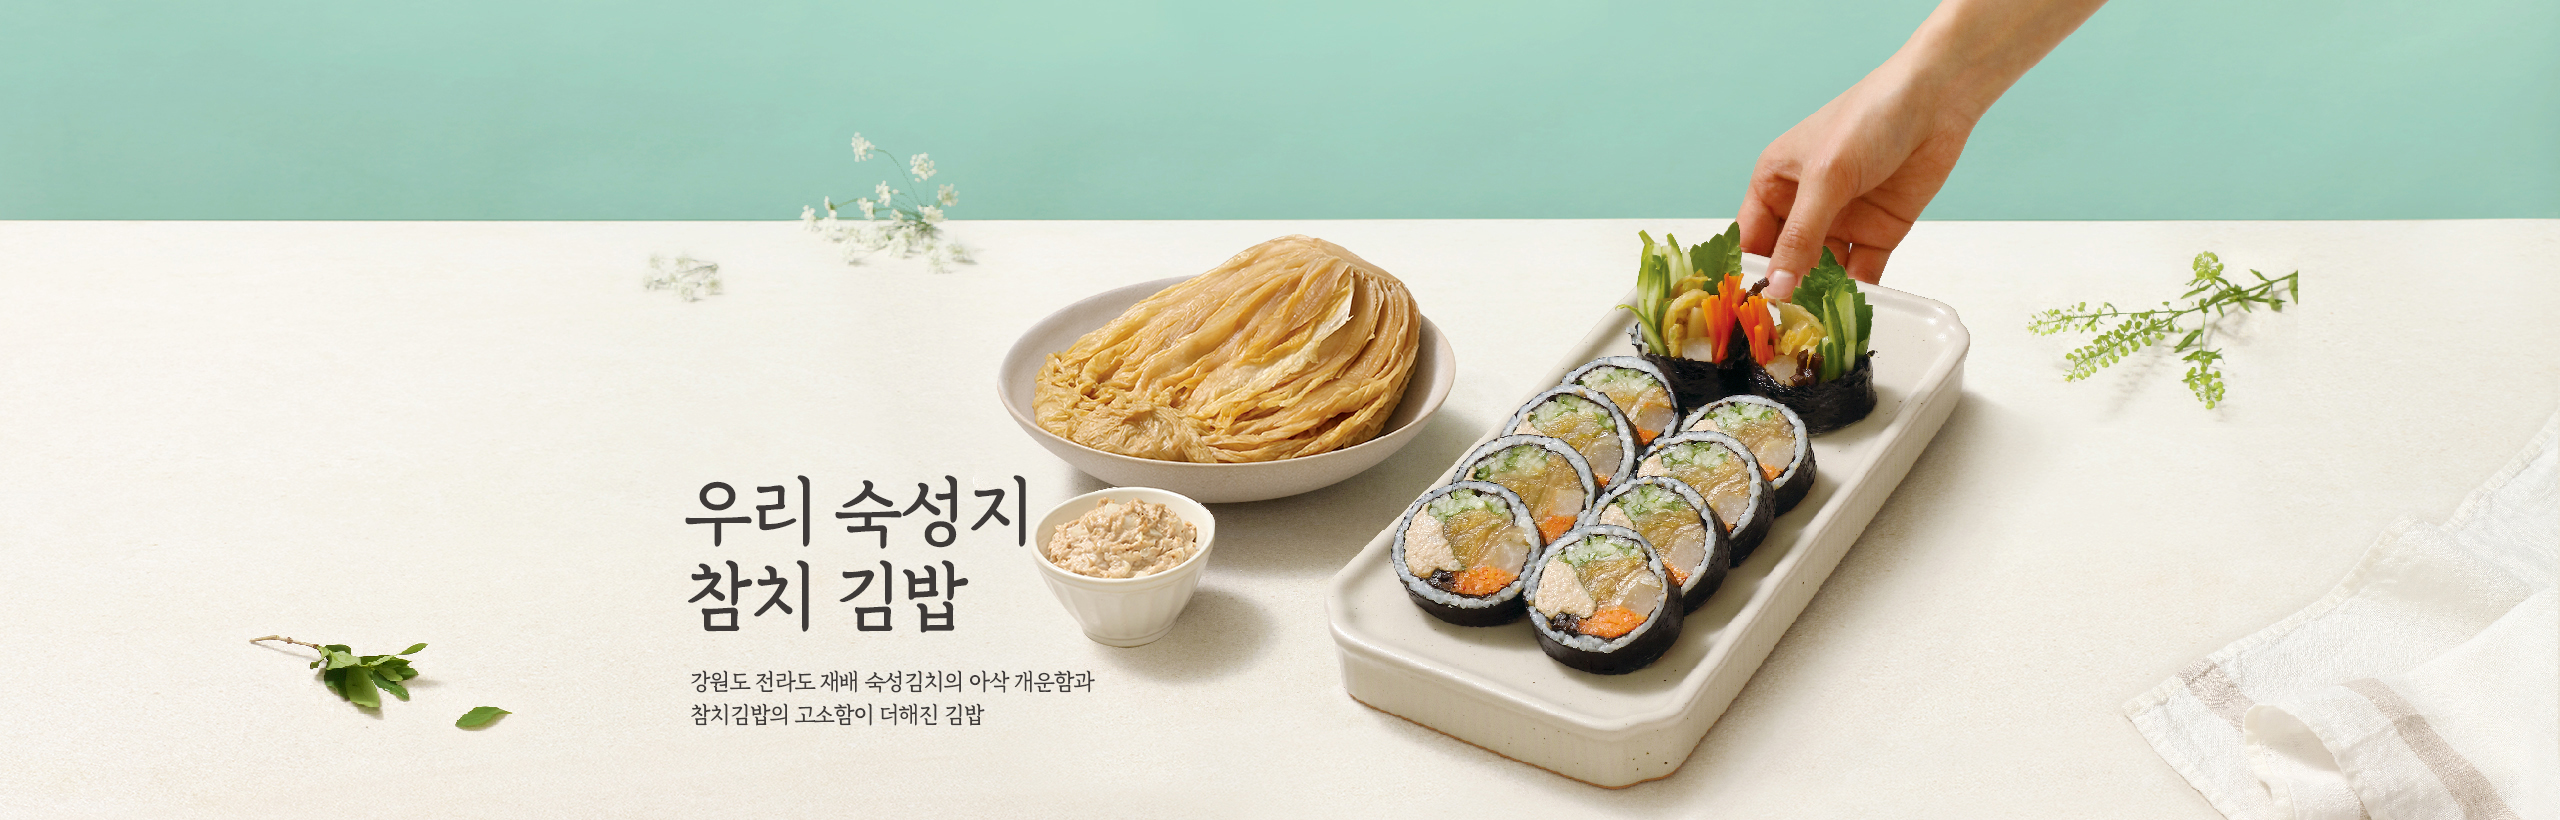 우리 숙성지 참치 김밥